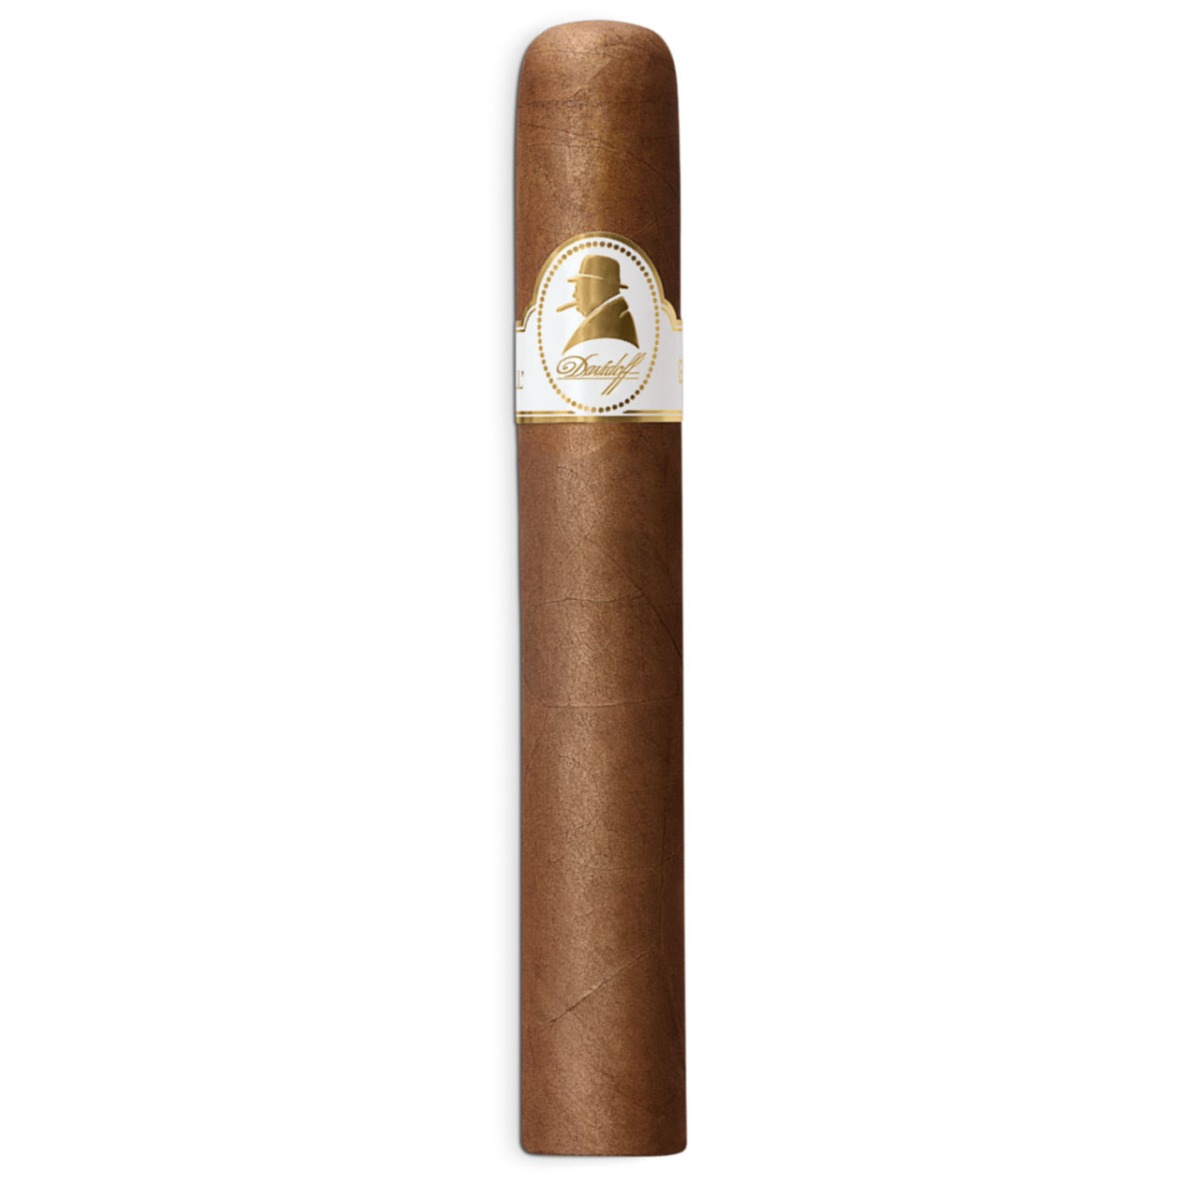 Davidoff Winston Churchill Robusto Single Cigar